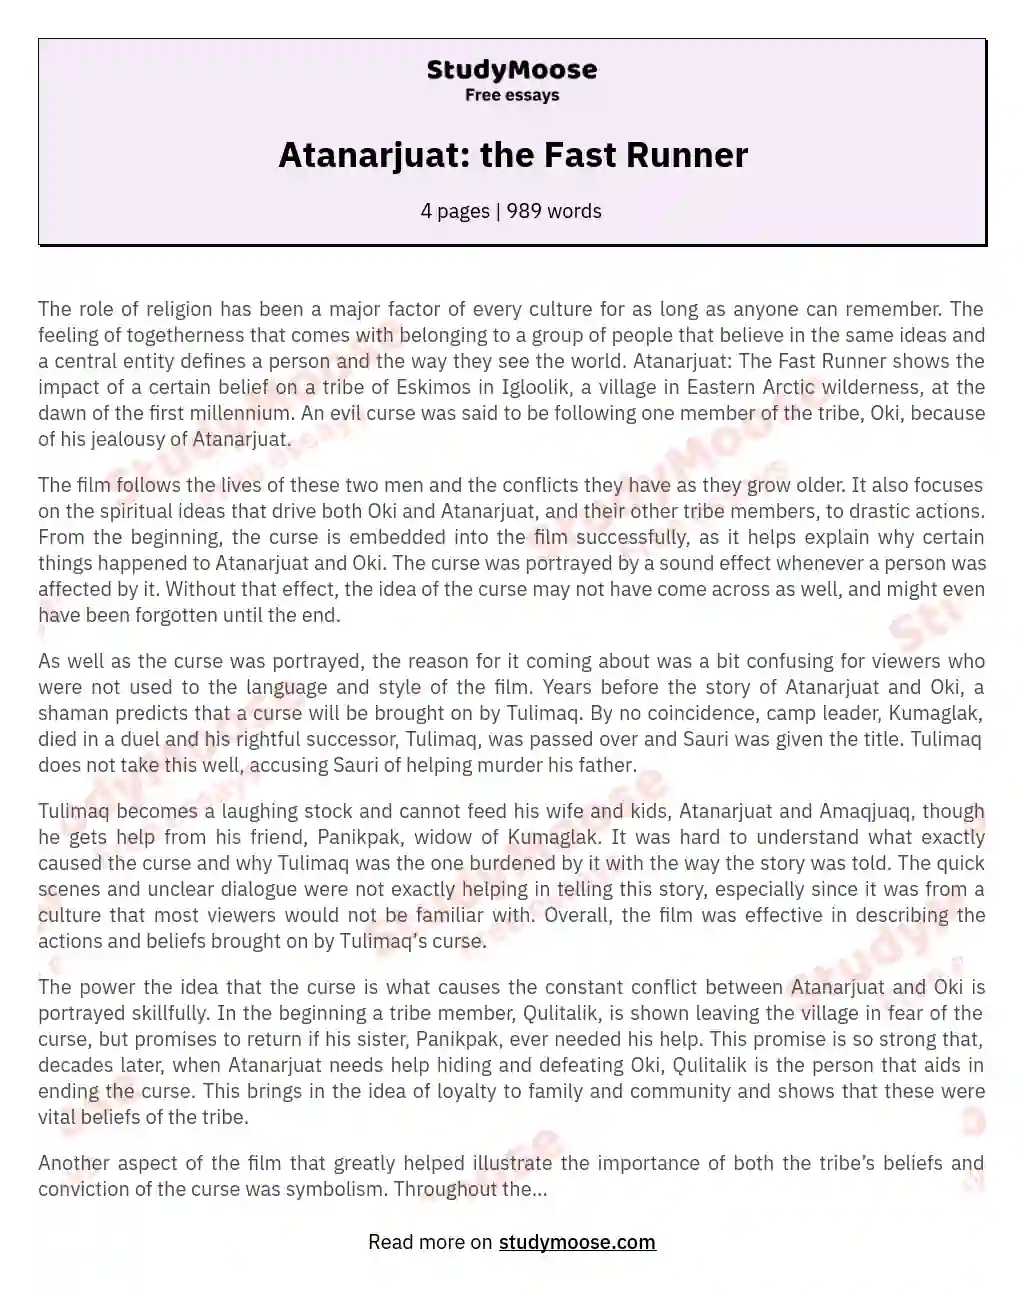 Atanarjuat: the Fast Runner essay